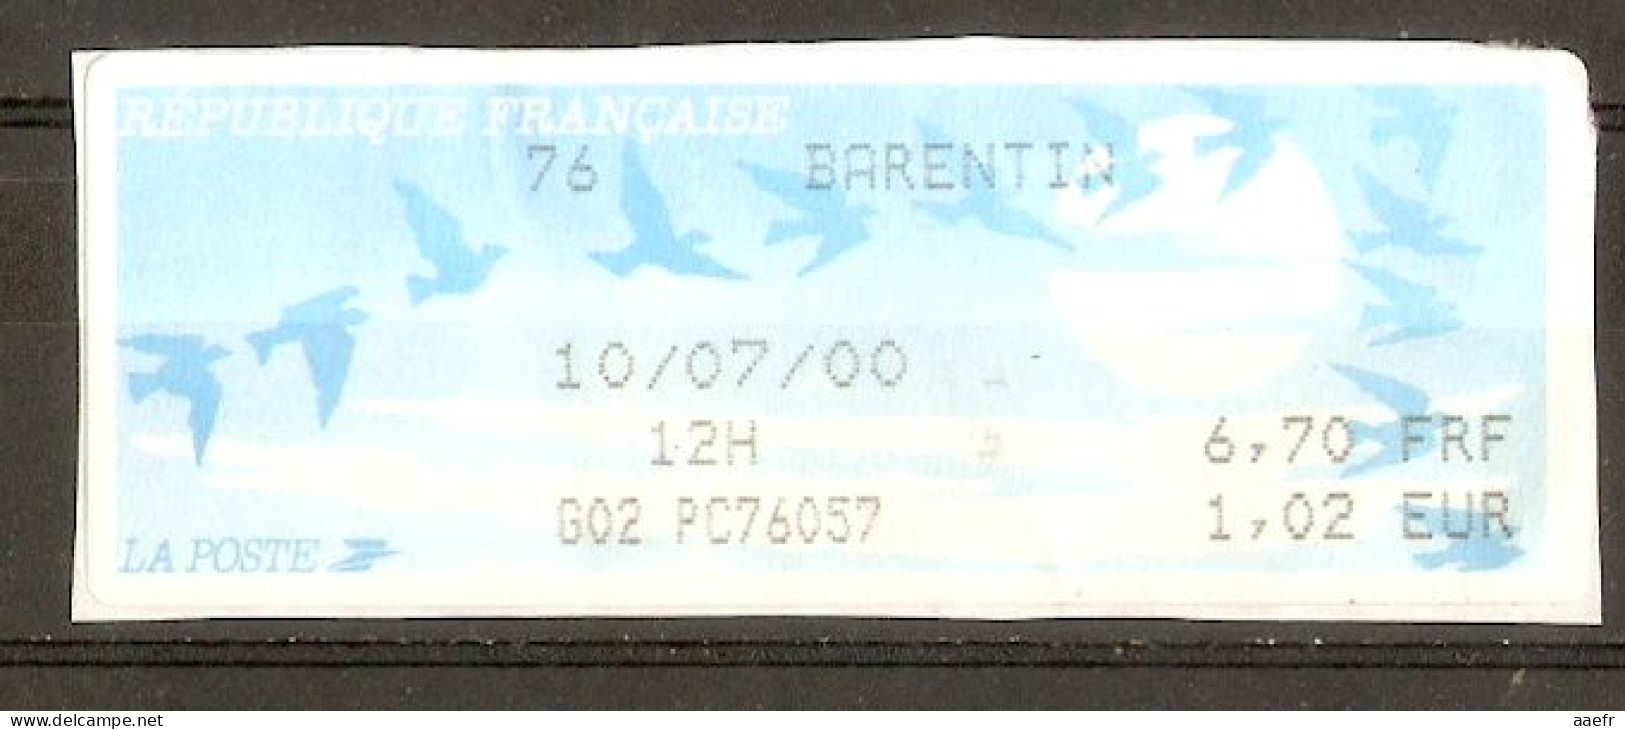 France - 2000 - Vignette ATM Type Oiseaux De Joubert - Barentin - Montant En FF Et € - 1990 Type « Oiseaux De Jubert »